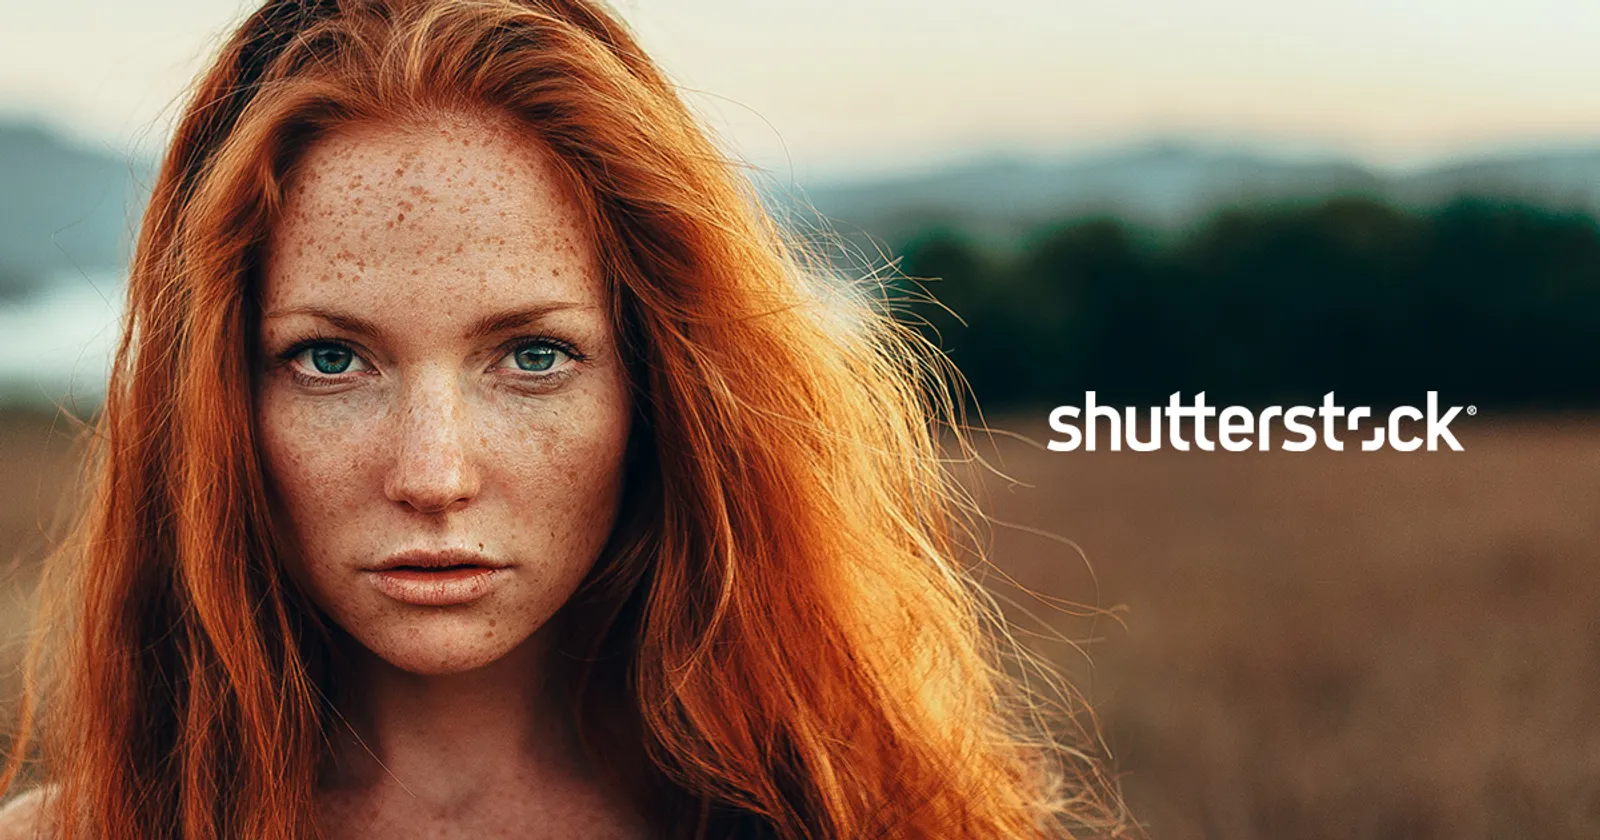 Dari Foto jadi Cuan, Ini 5 Cara menjual Foto di Shutterstock